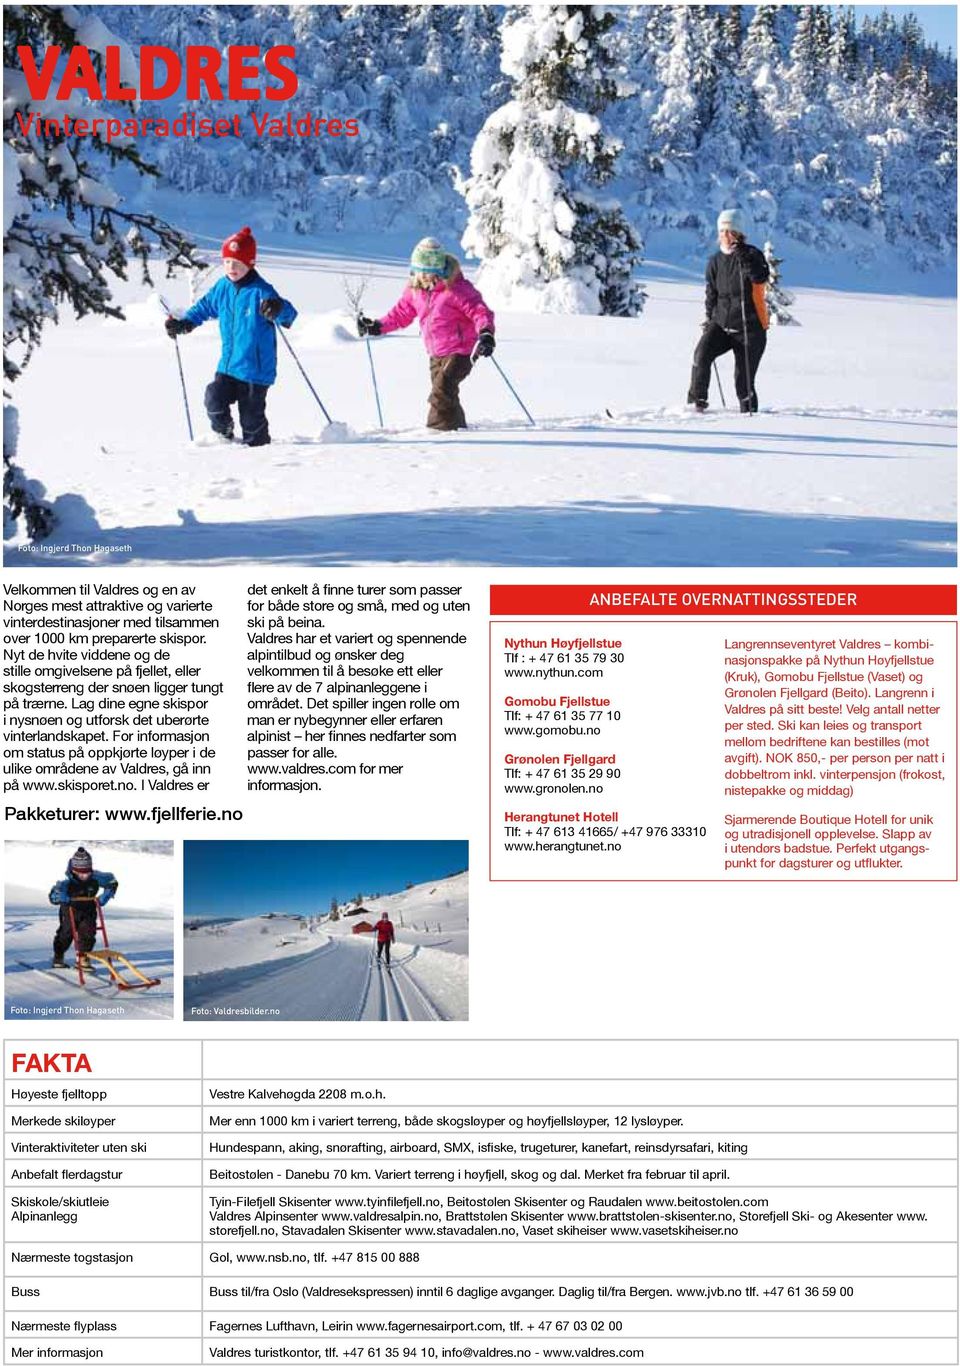 For informasjon om status på oppkjørte løyper i de ulike områdene av Valdres, gå inn på www.skisporet.no. I Valdres er Pakketurer: www.fjellferie.